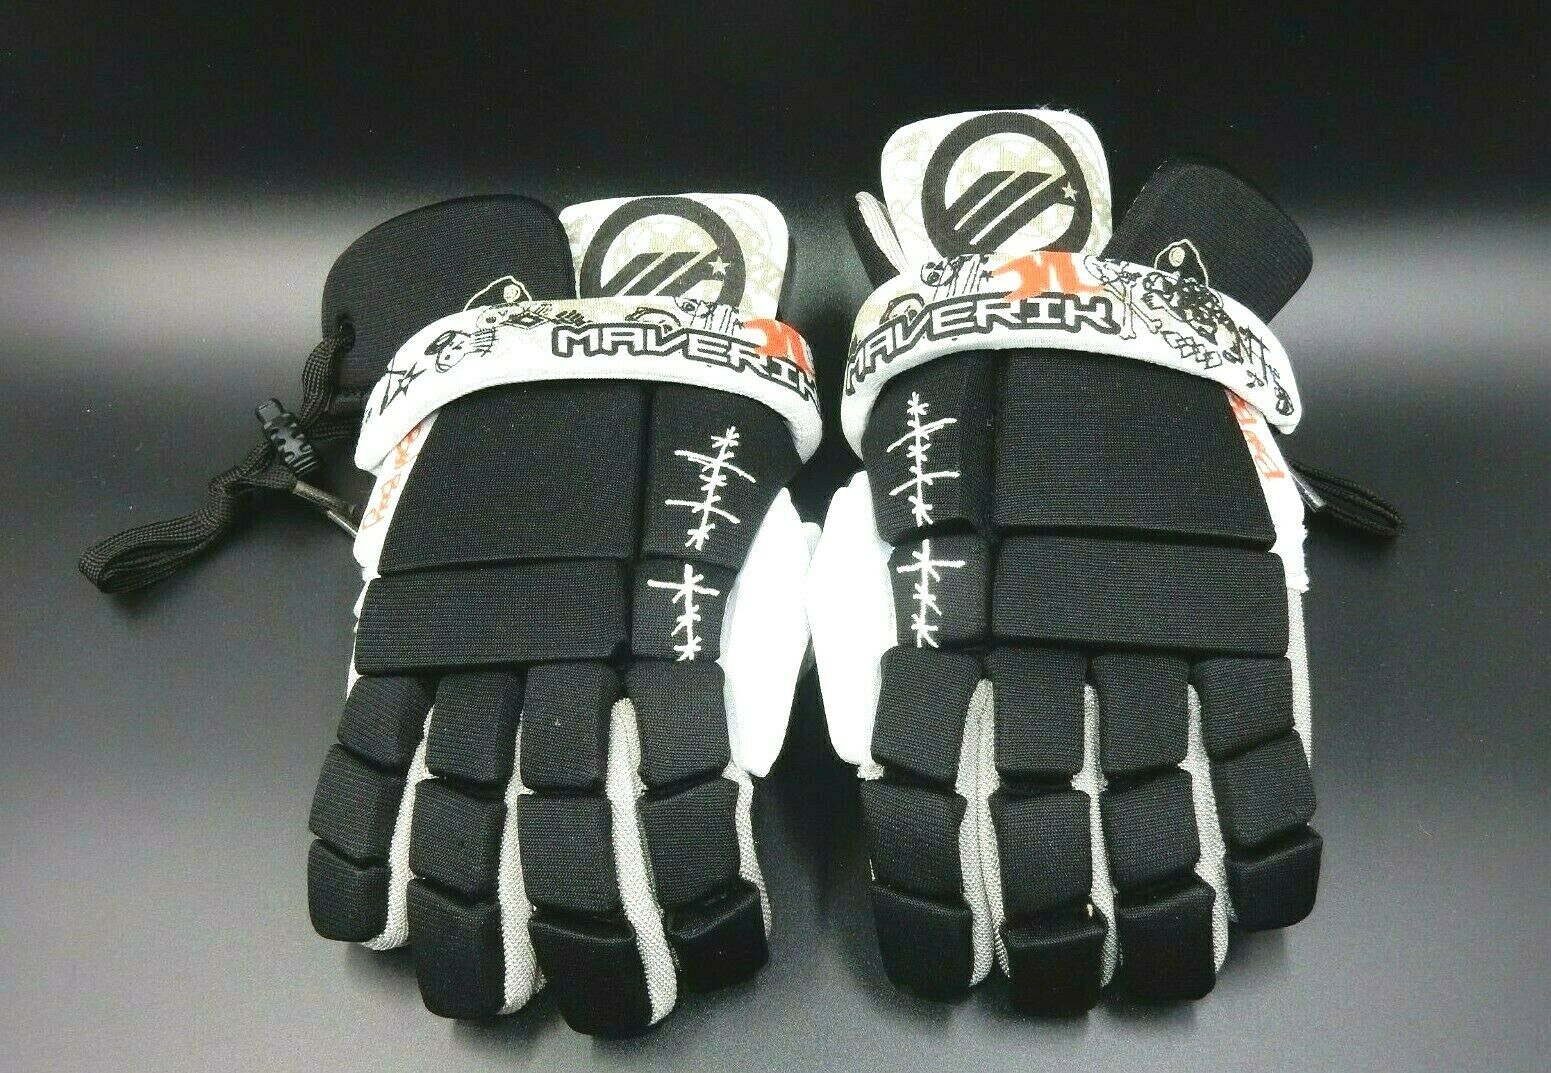 Nos Maverik Lacrosse Bad Boy Glove Beginner Black & White 10" Small Padded Glove